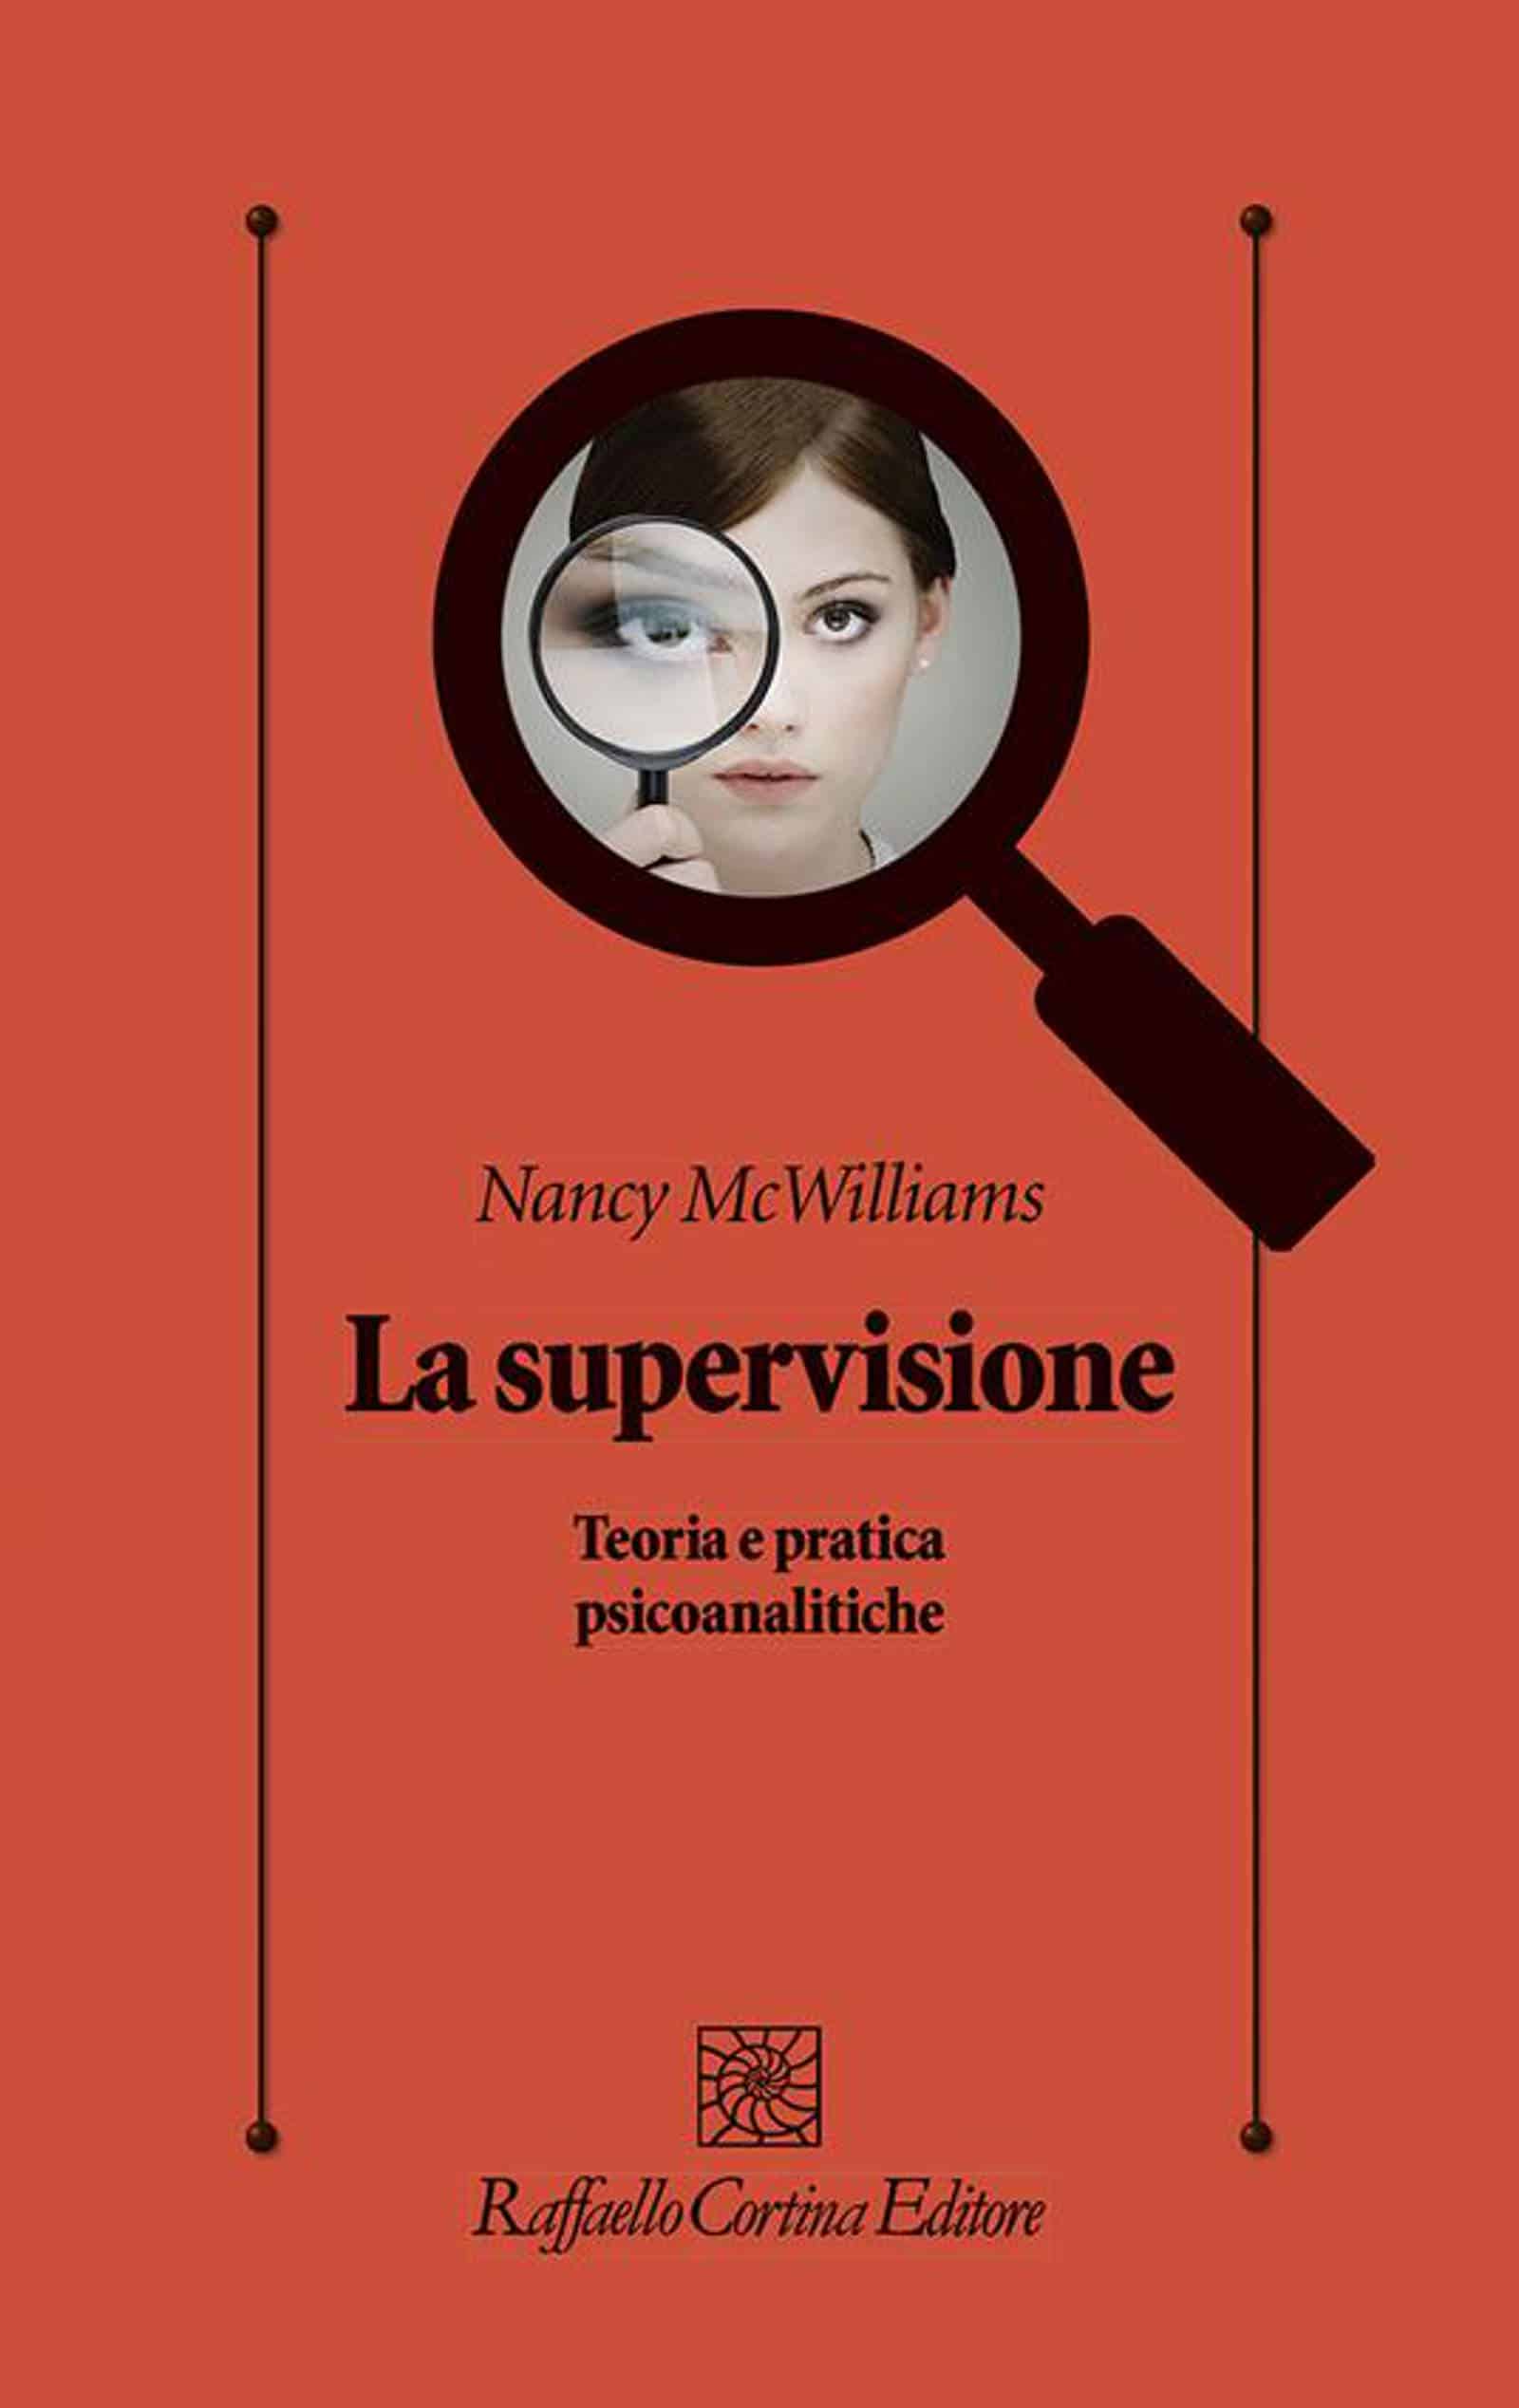 La supervisione 2020 di Nancy McWilliams Recensione del libro Featured